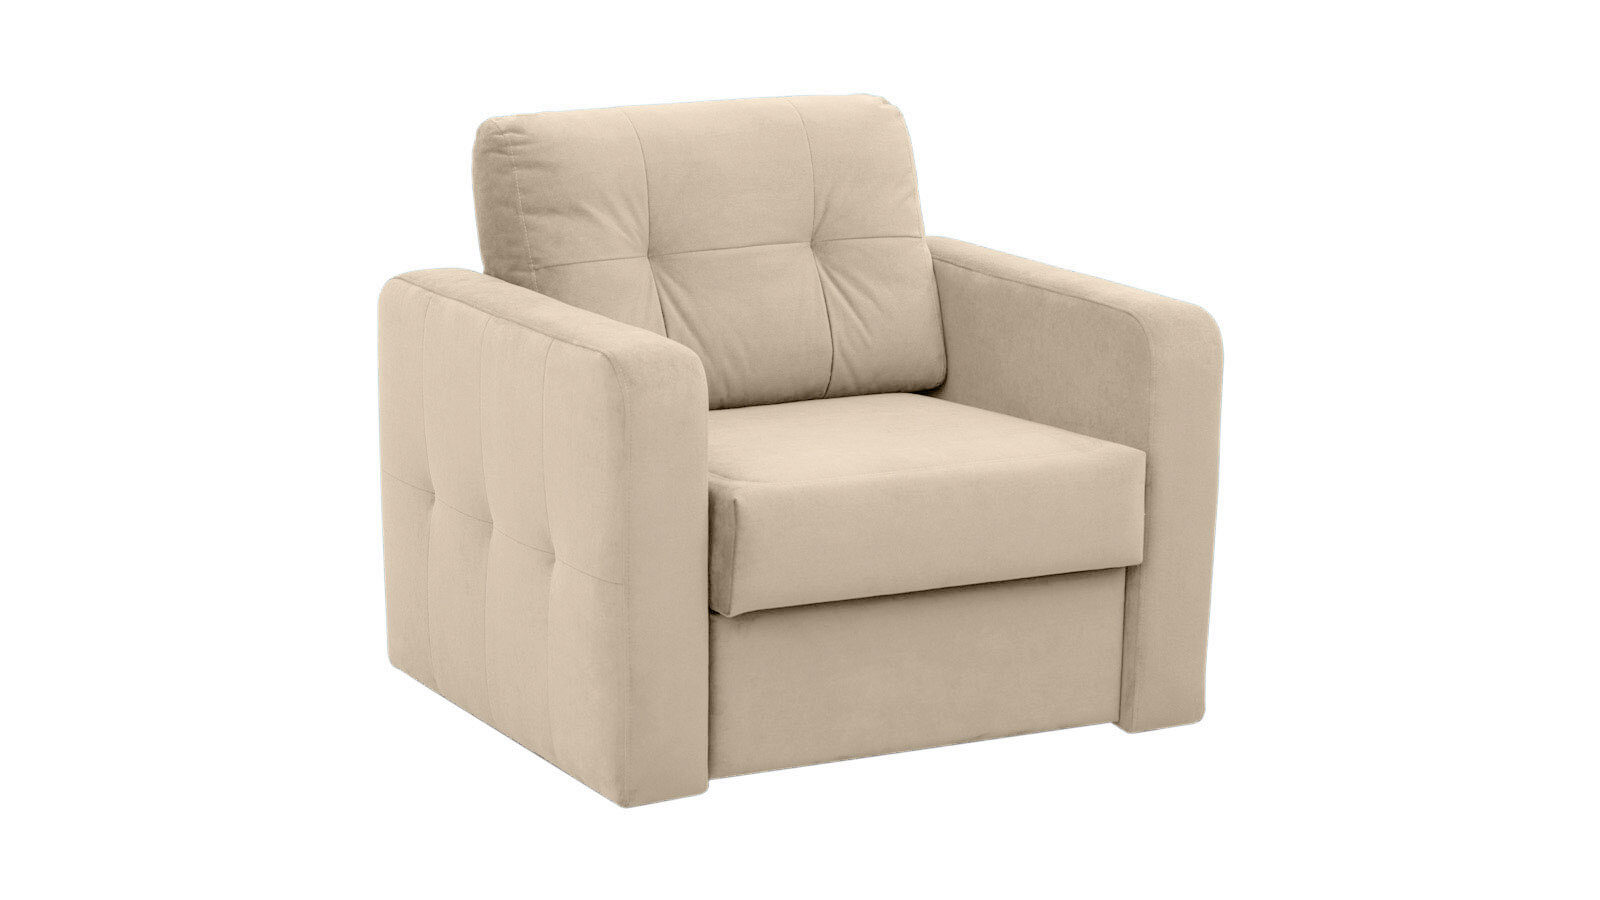 Кресло-кровать Loko Dumont подвесное кресло кокон 110х86х198 см 150 кг green days белое ротанг подушка красная h073 19 1850